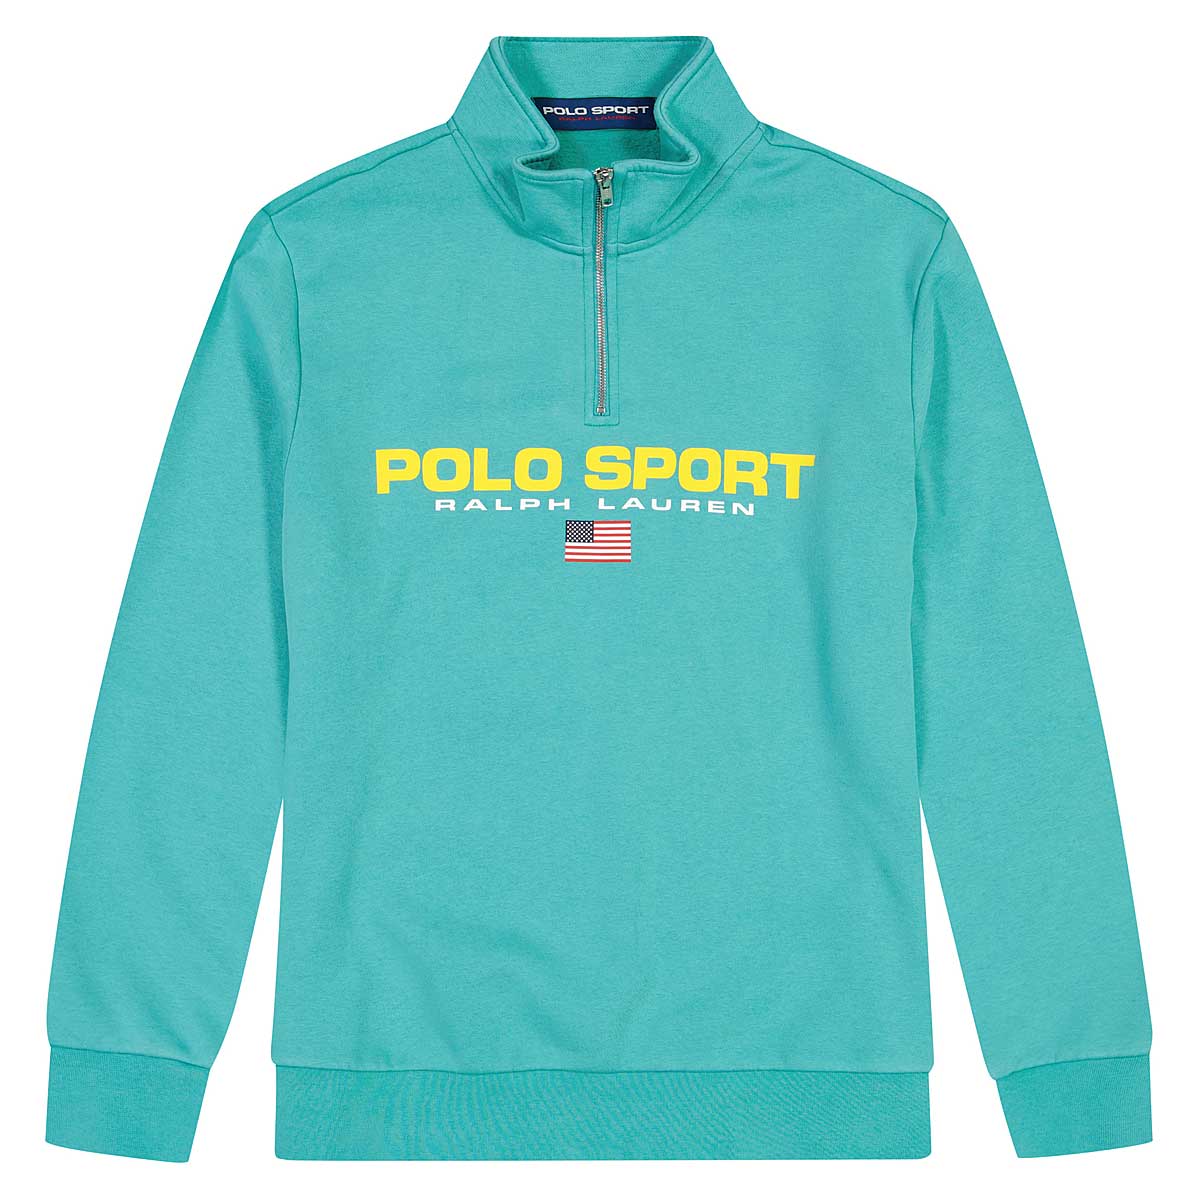 Polo Ralph Lauren Polo Sport Half Zip Sweatshirt, Bright Teal